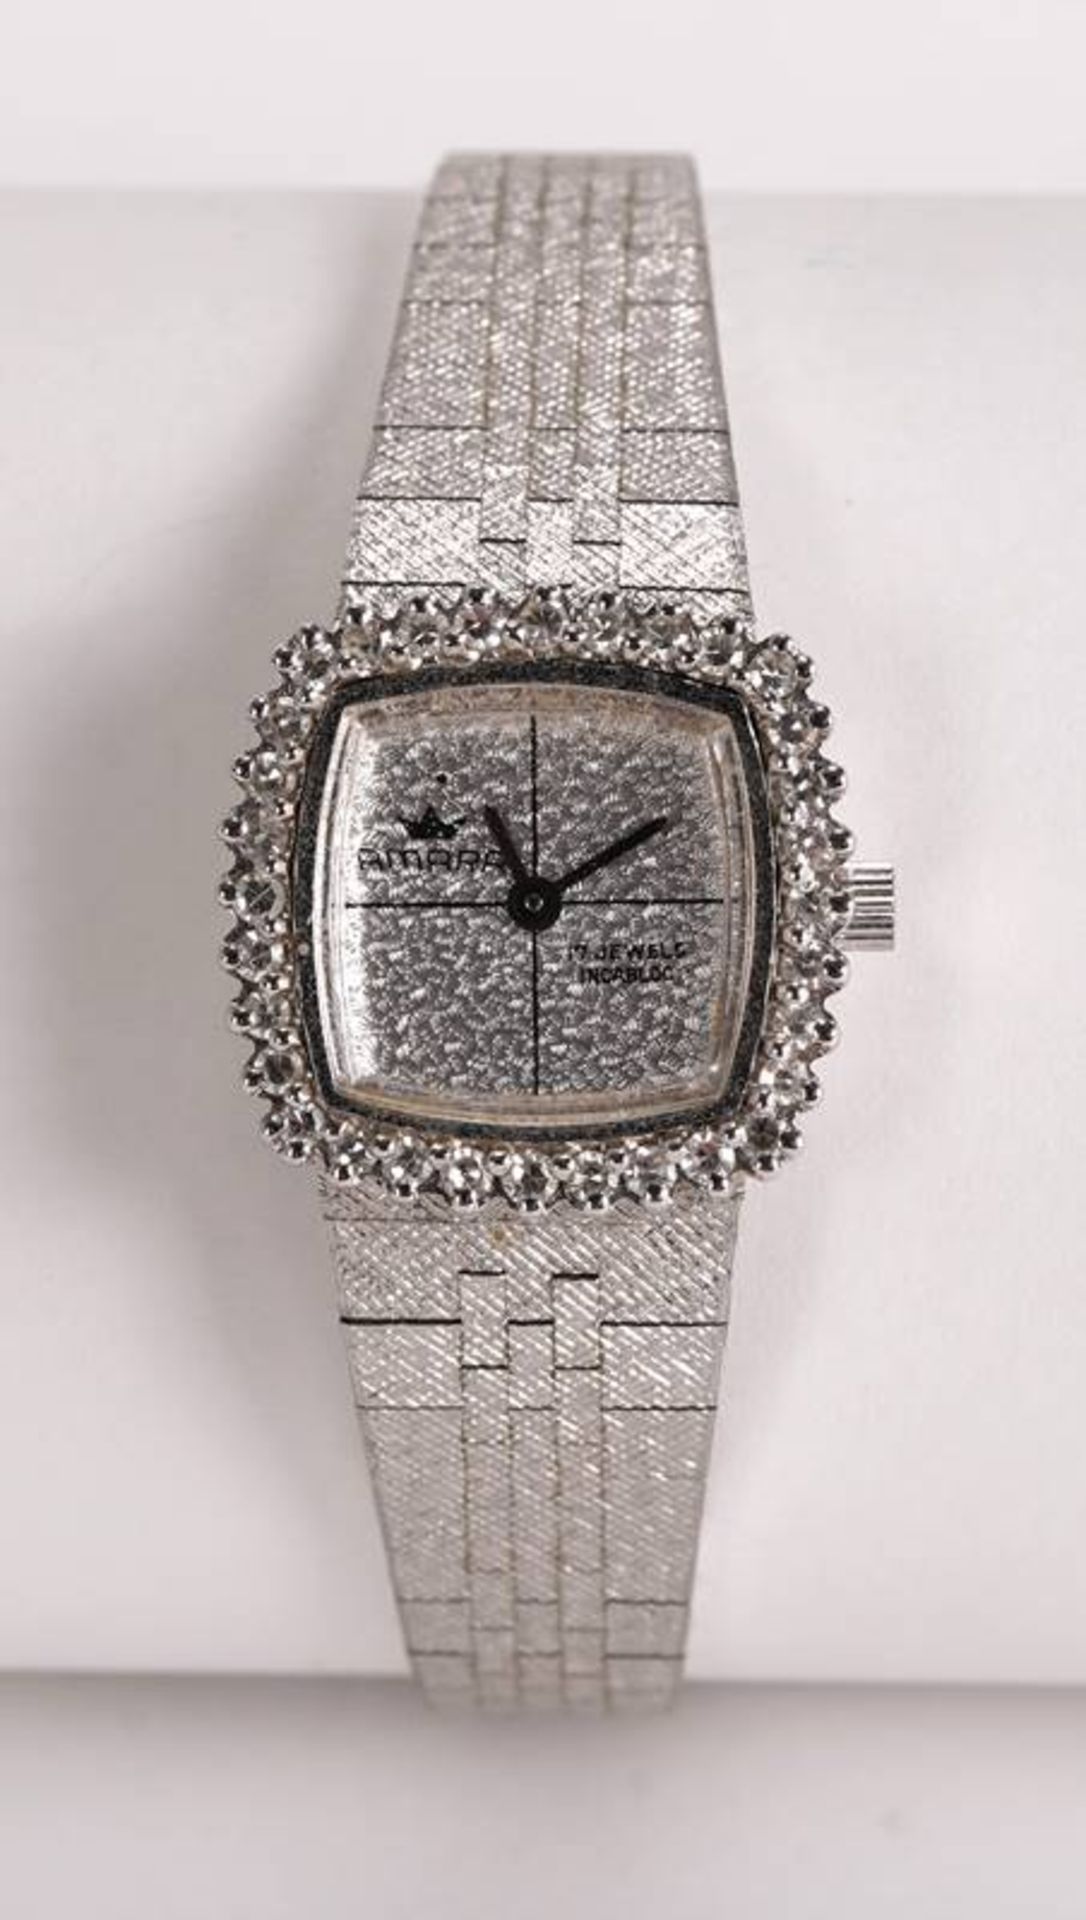 Extravagant vintage ladies' watch - Image 2 of 4